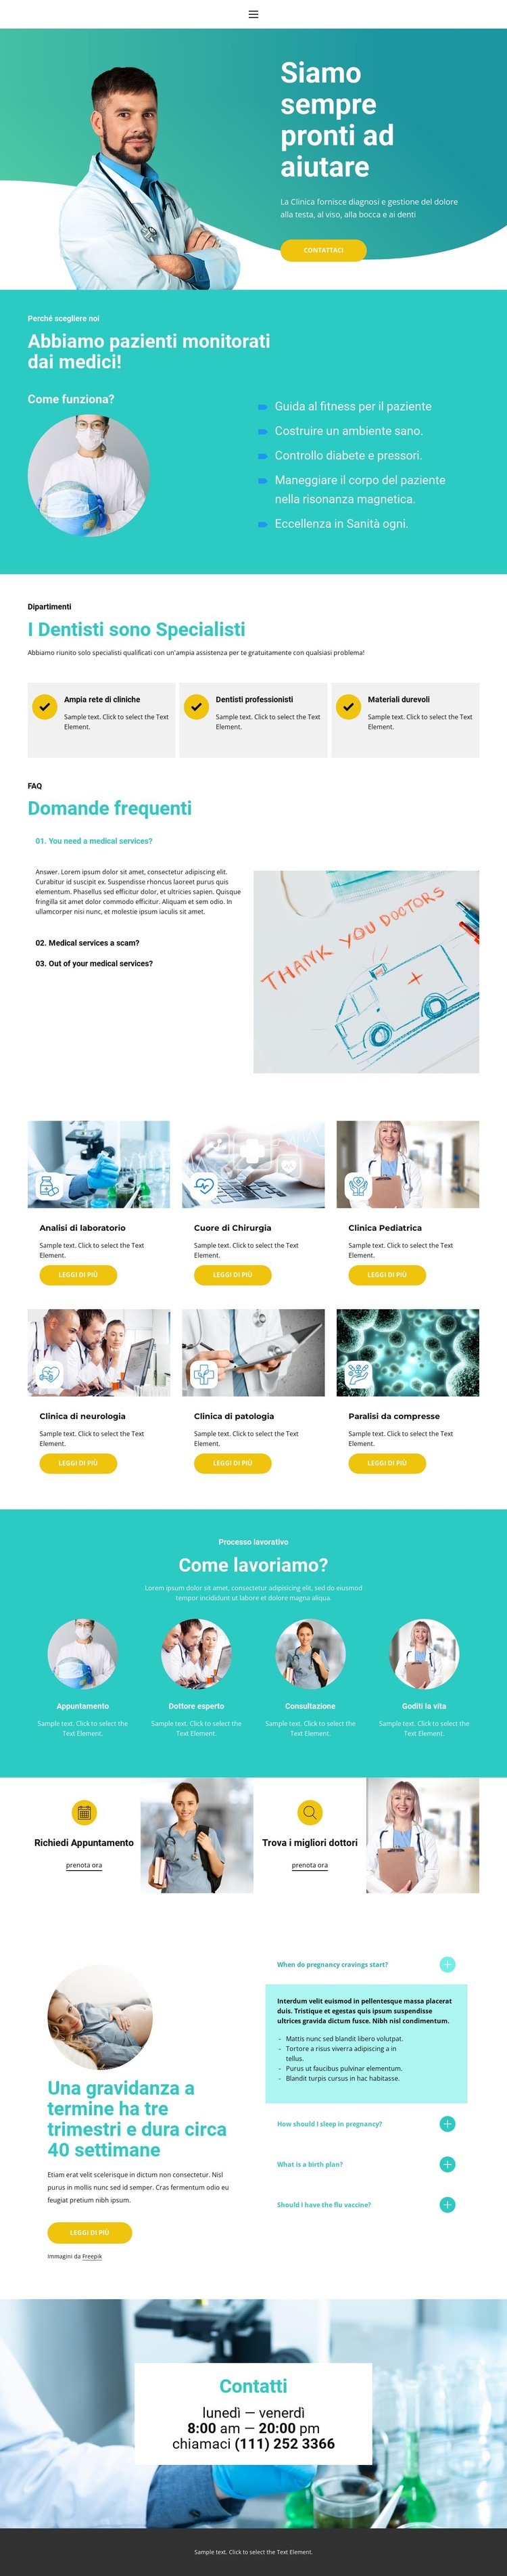 Nuovo centro medico Modello HTML5